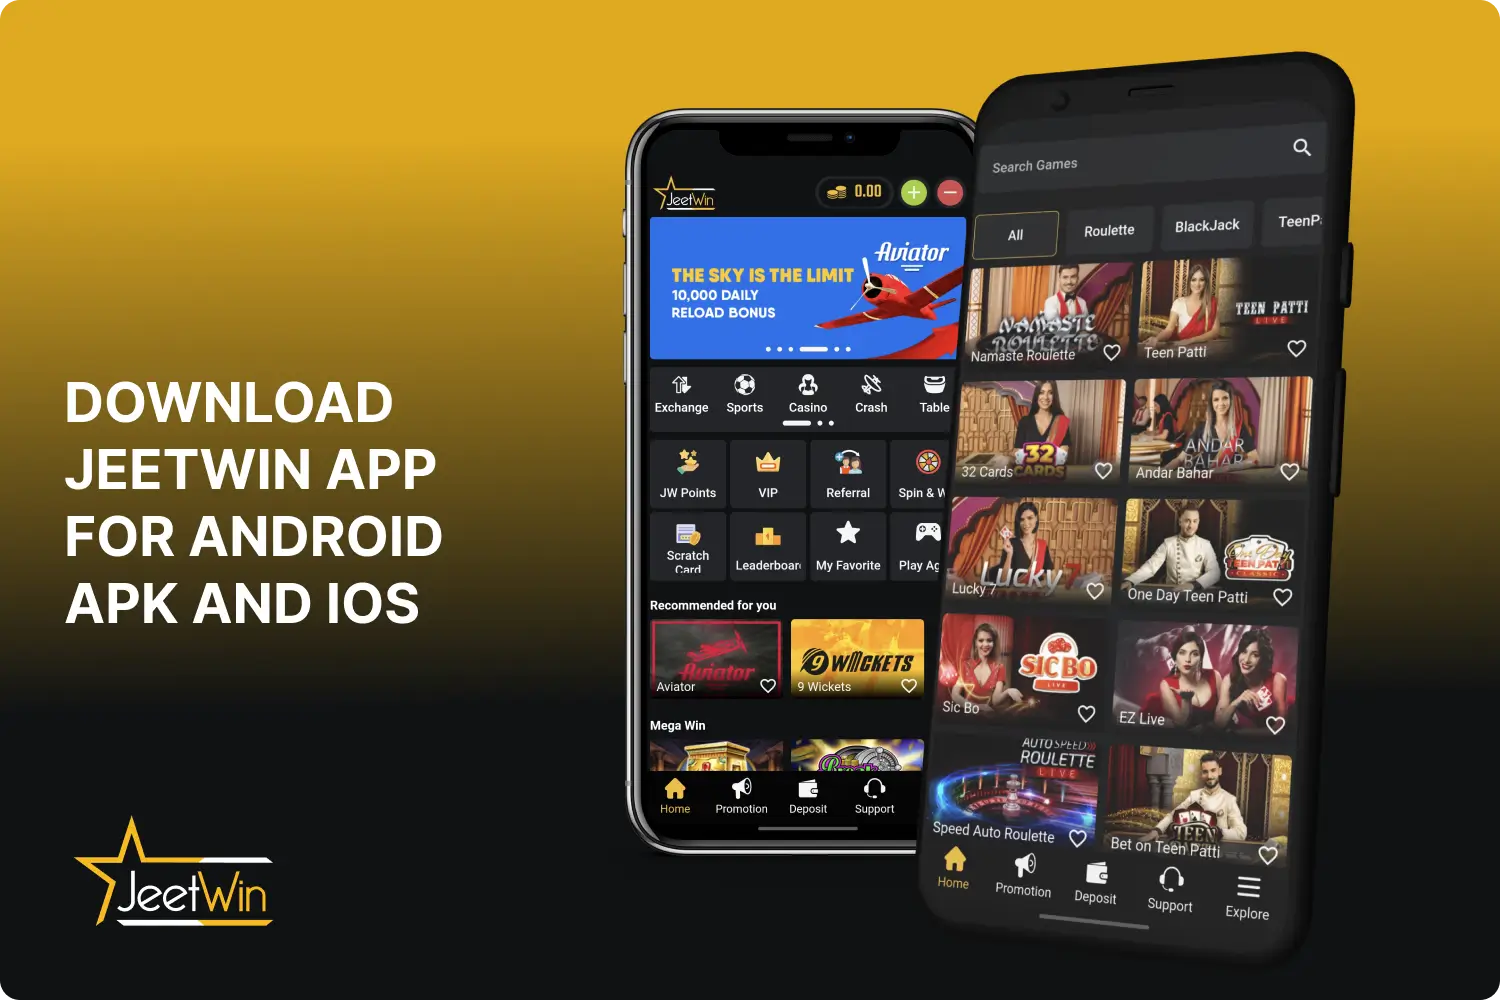 एंड्रॉइड एपीके और आईओएस के लिए जीतविन ऐप भारत में पूरी तरह से मुफ्त डाउनलोड के लिए उपलब्ध है